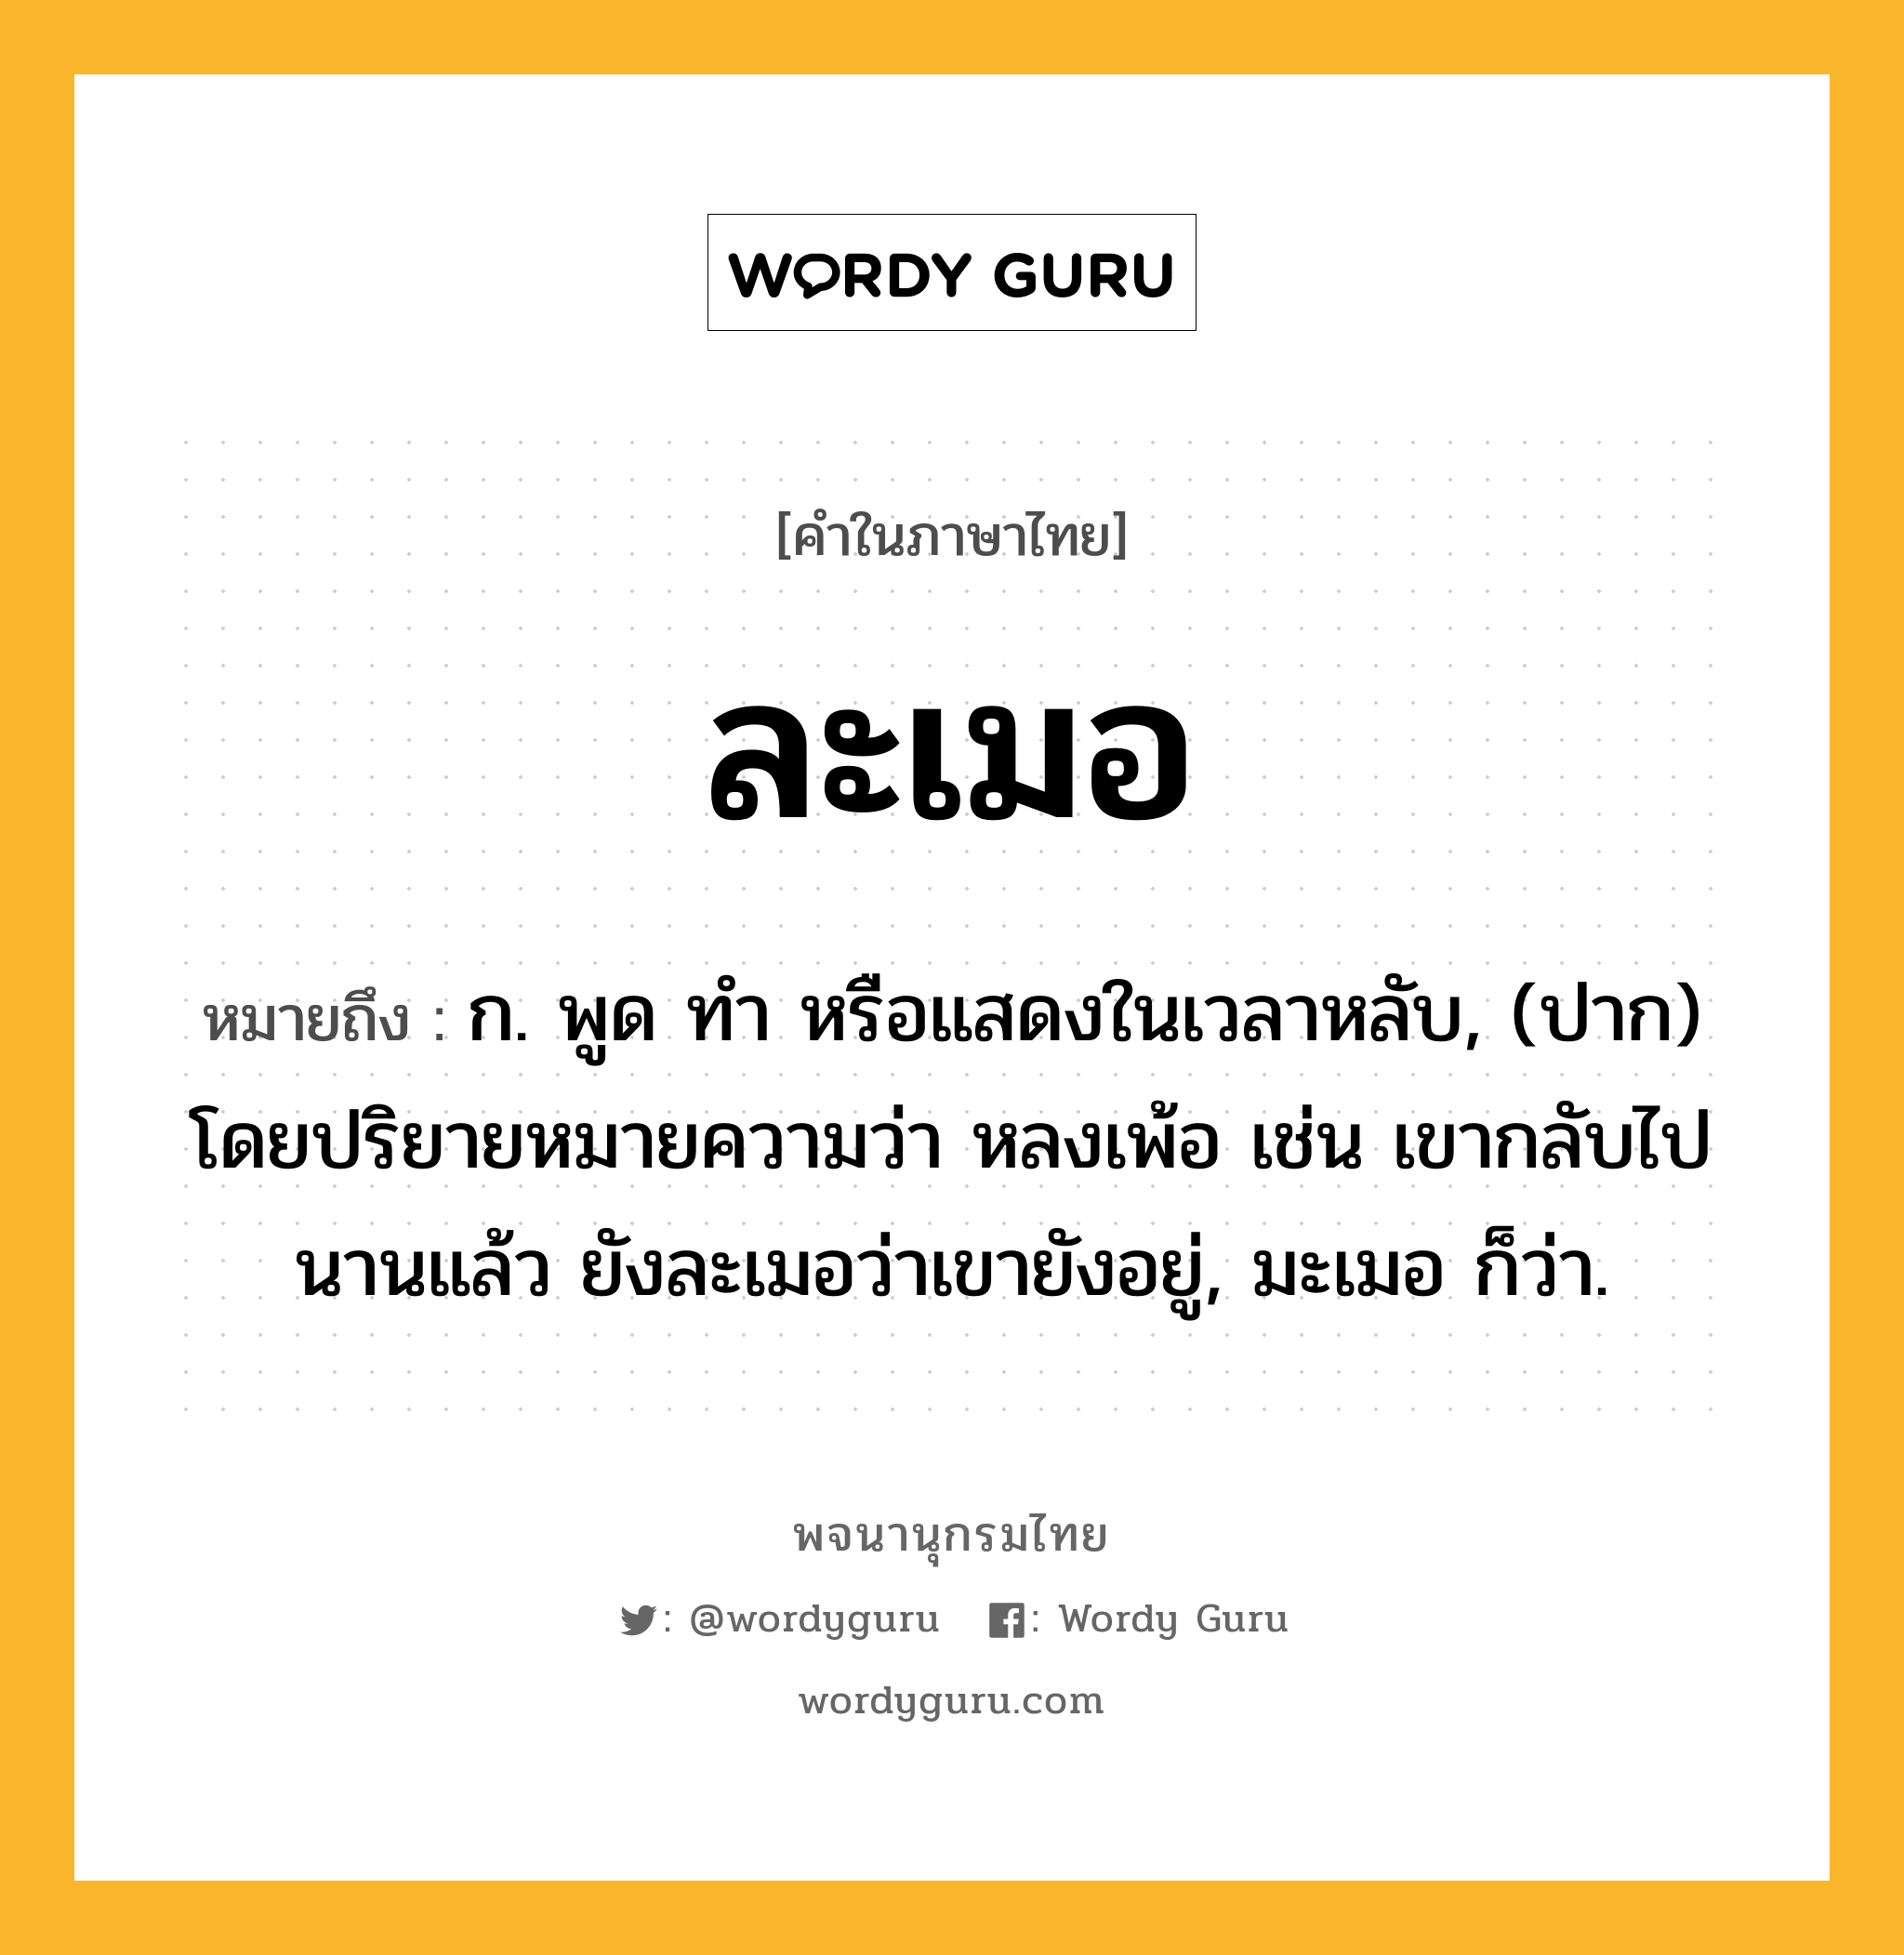 ละเมอ หมายถึงอะไร?, คำในภาษาไทย ละเมอ หมายถึง ก. พูด ทํา หรือแสดงในเวลาหลับ, (ปาก) โดยปริยายหมายความว่า หลงเพ้อ เช่น เขากลับไปนานแล้ว ยังละเมอว่าเขายังอยู่, มะเมอ ก็ว่า.